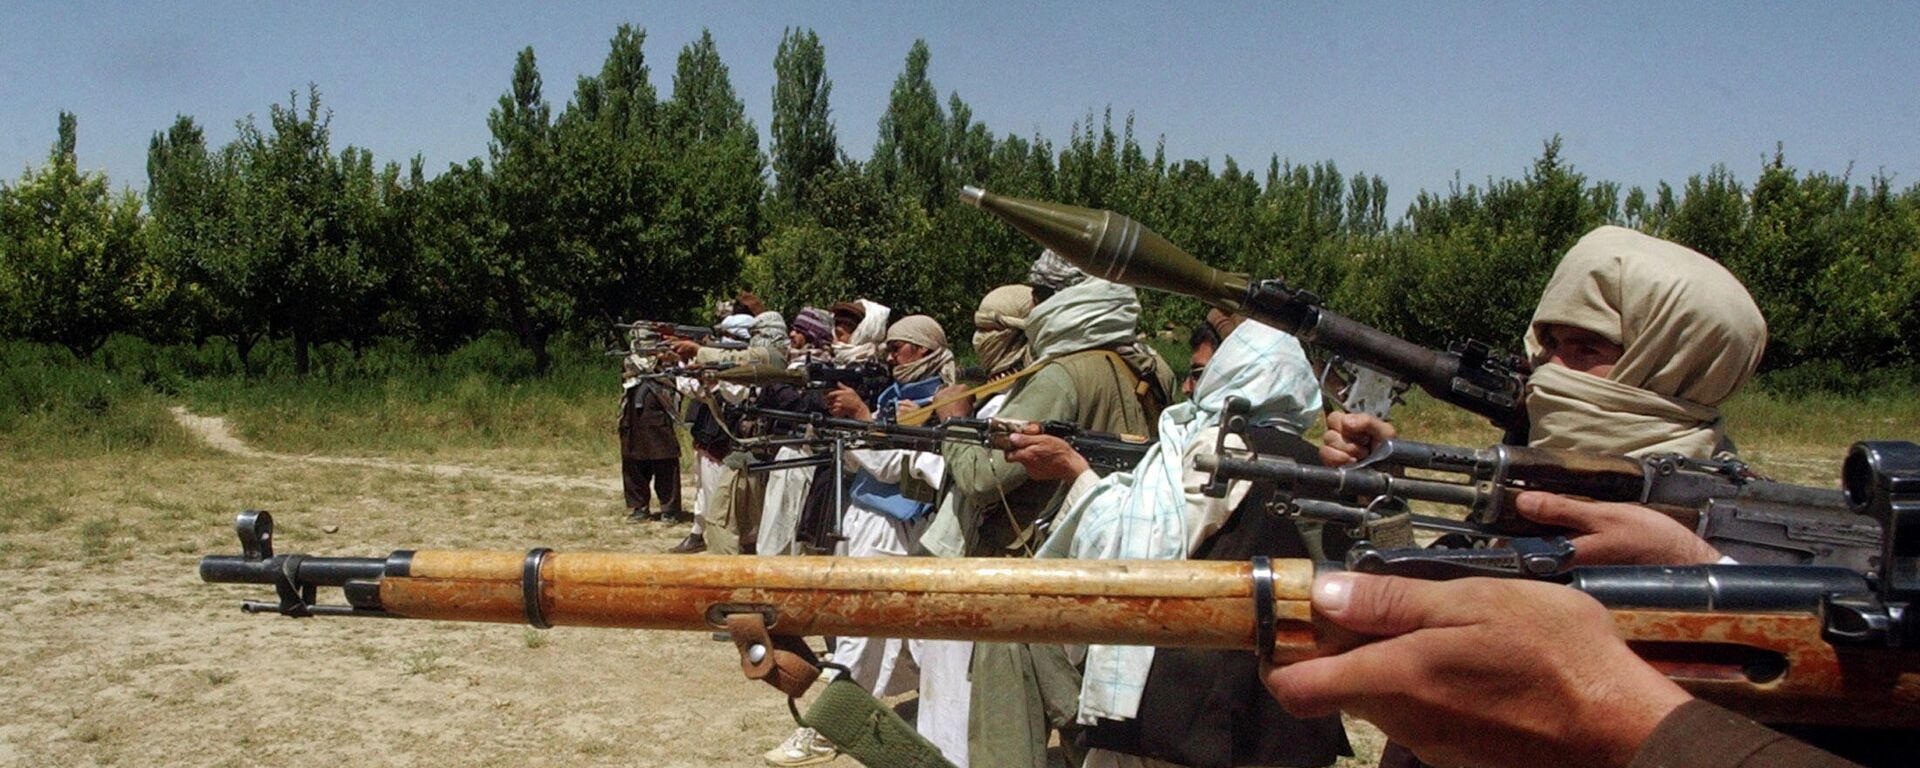 Милитанти покрета Талибан у Авганистану - Sputnik Србија, 1920, 19.08.2021